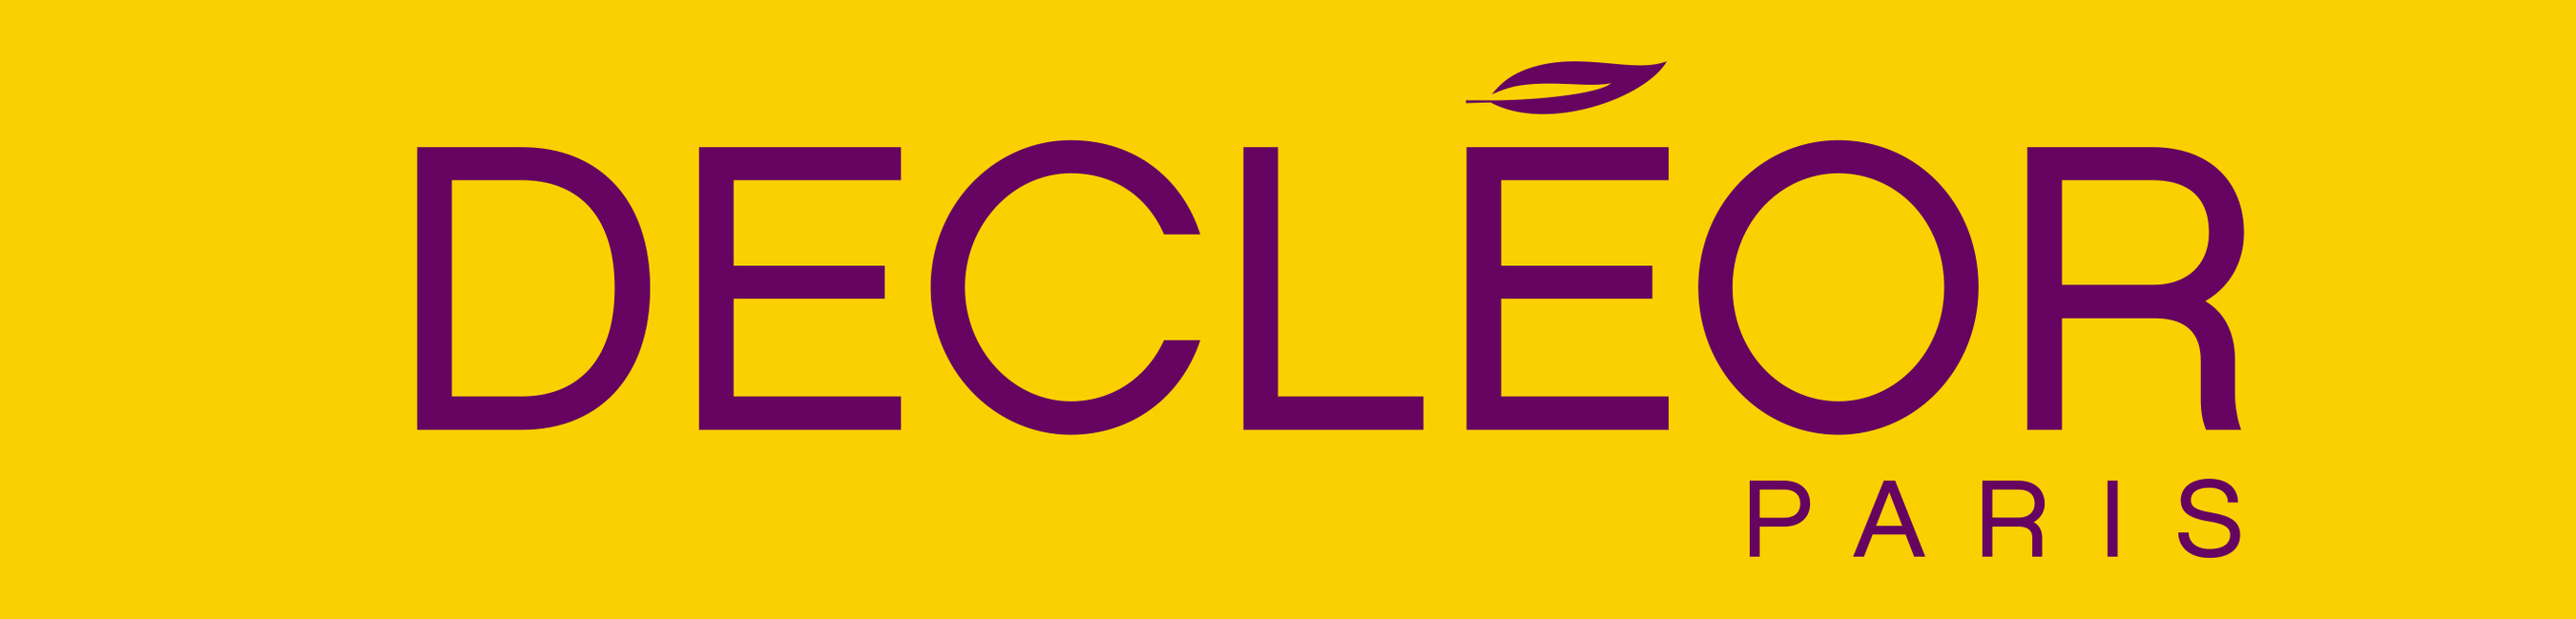 DECLEOR Logo.(PRNewsFoto/DECLEOR) (PRNewsFoto/DECLEOR)